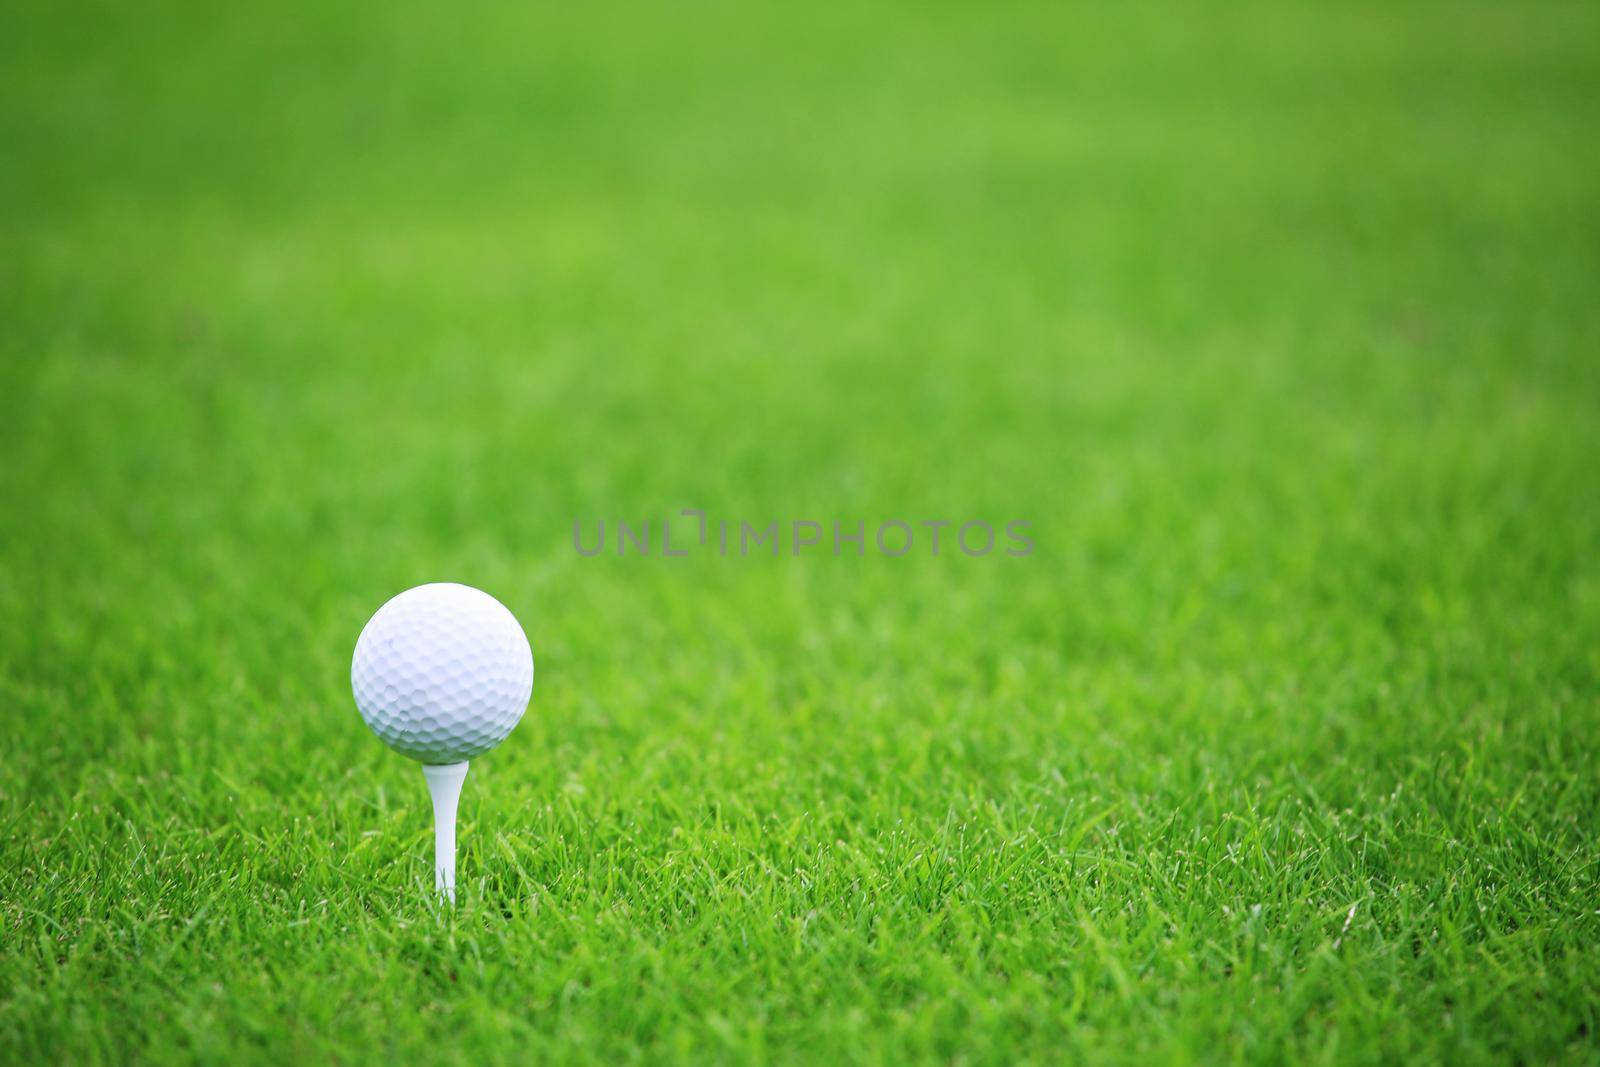 Golf ball on green grass background by destillat